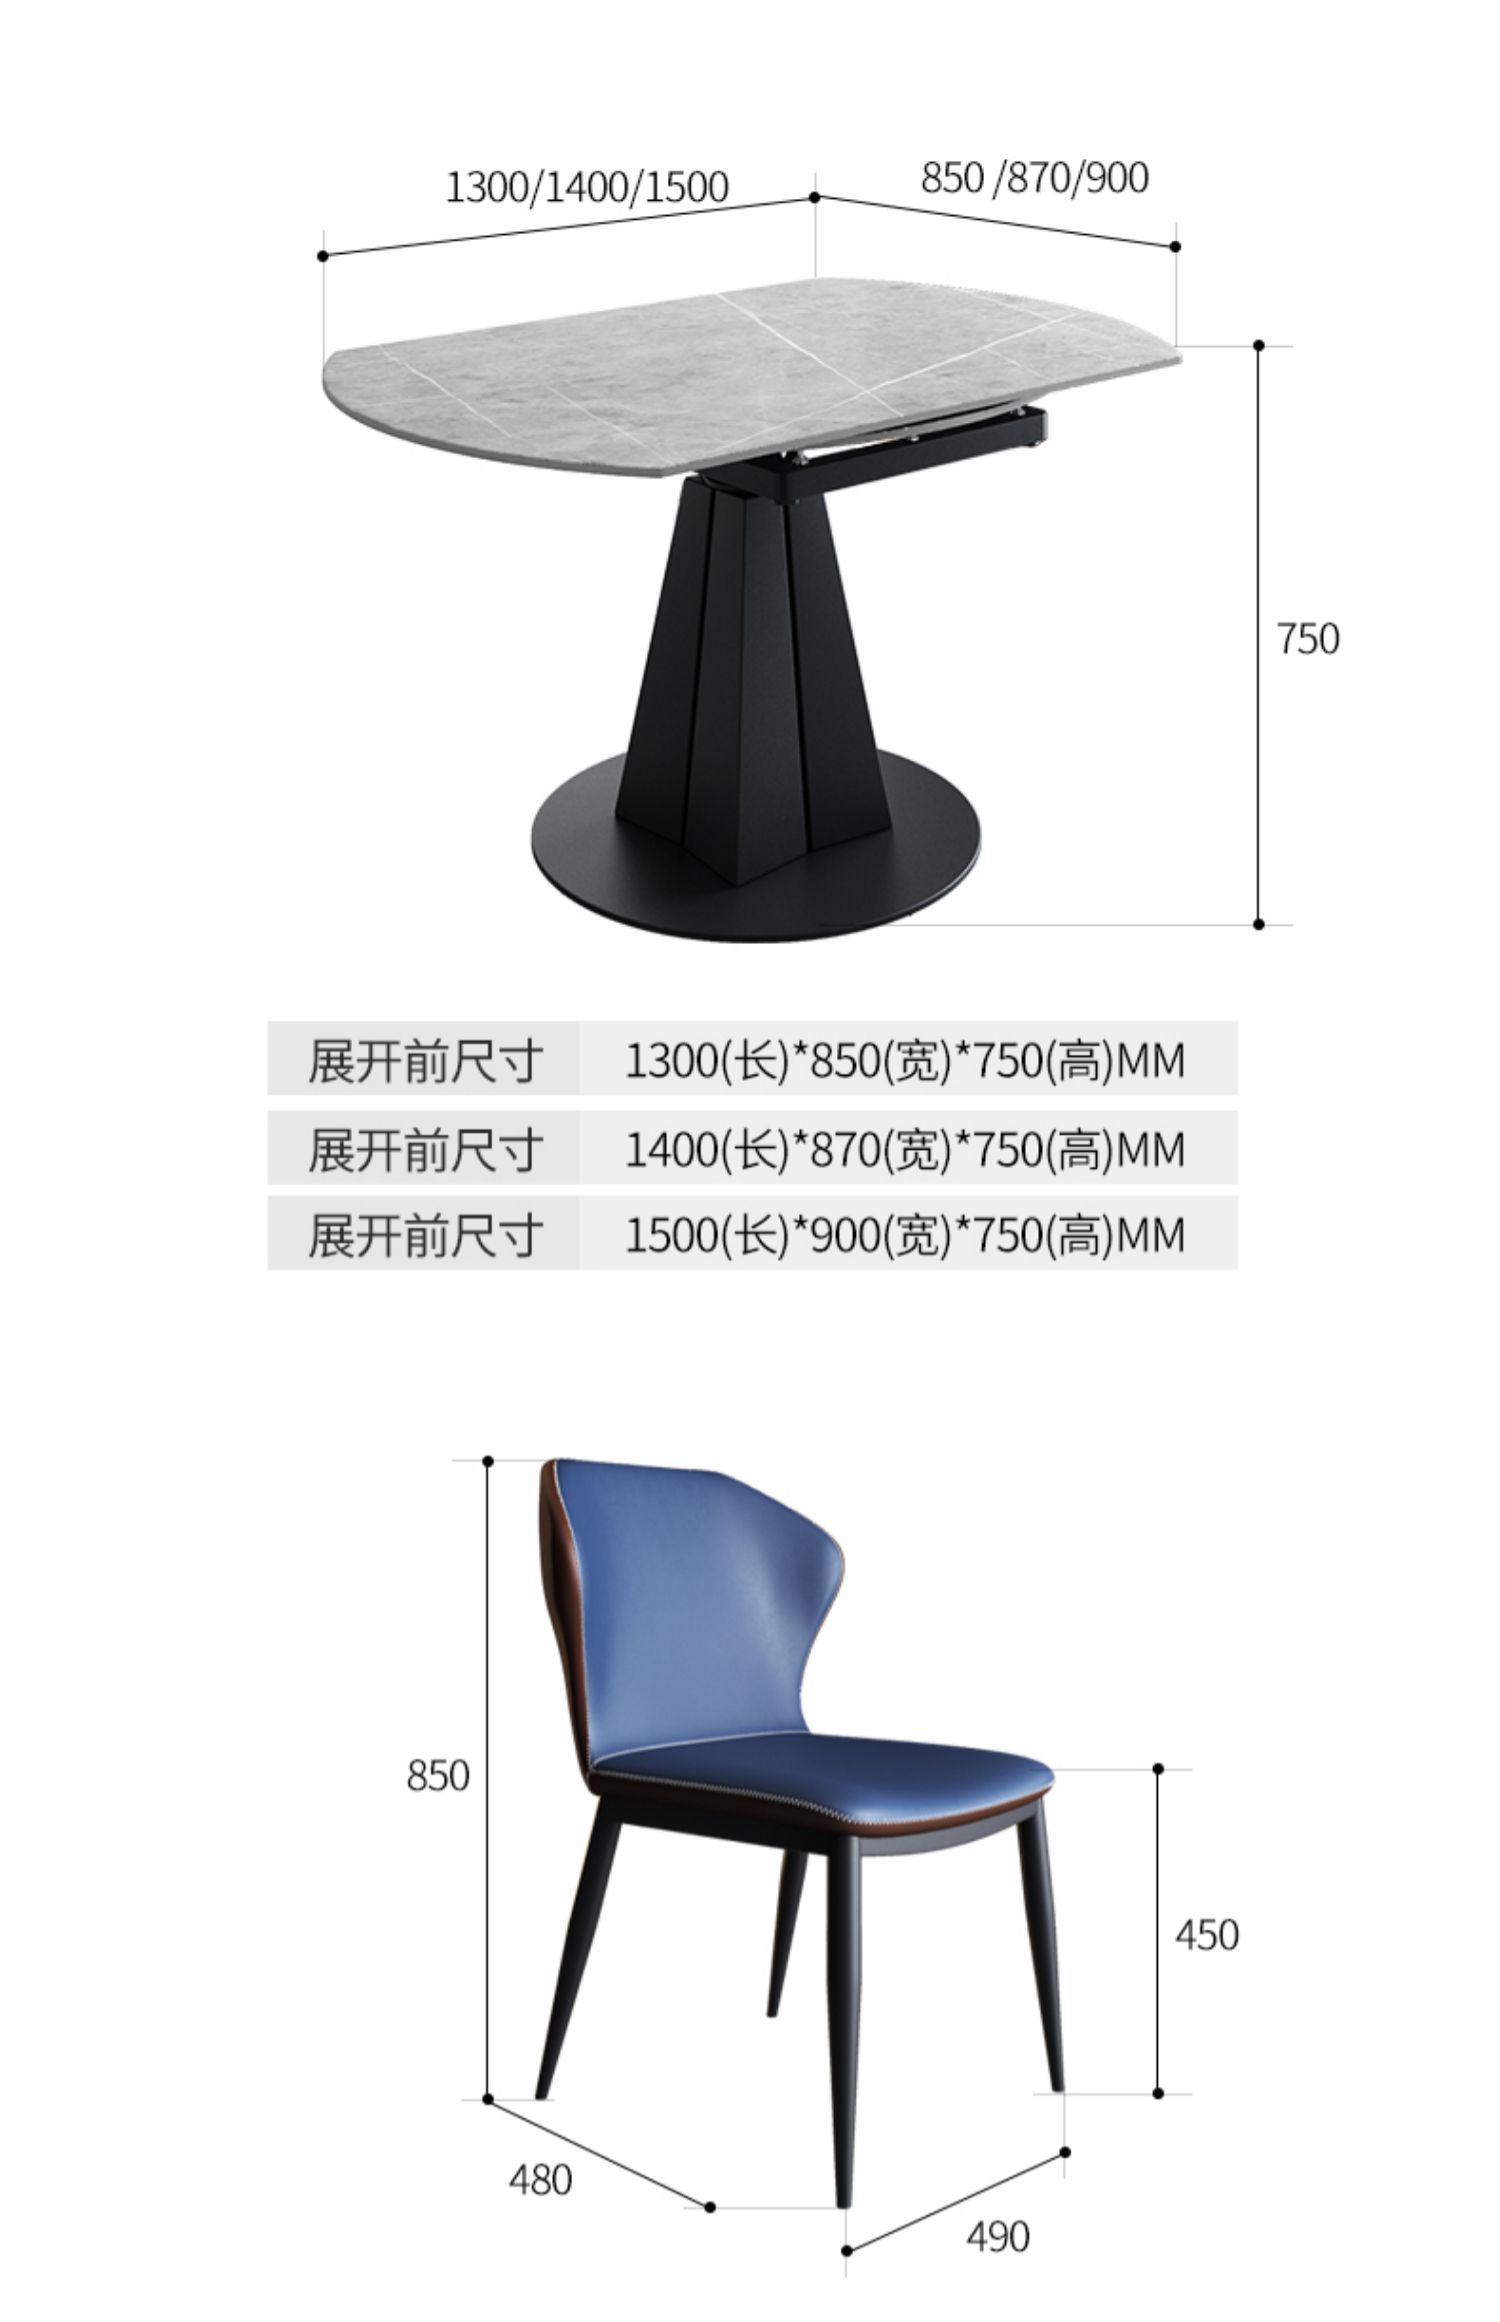 岩板餐桌可变圆桌转盘圆形伸缩旋转现代简约小户型方圆两用家用桌